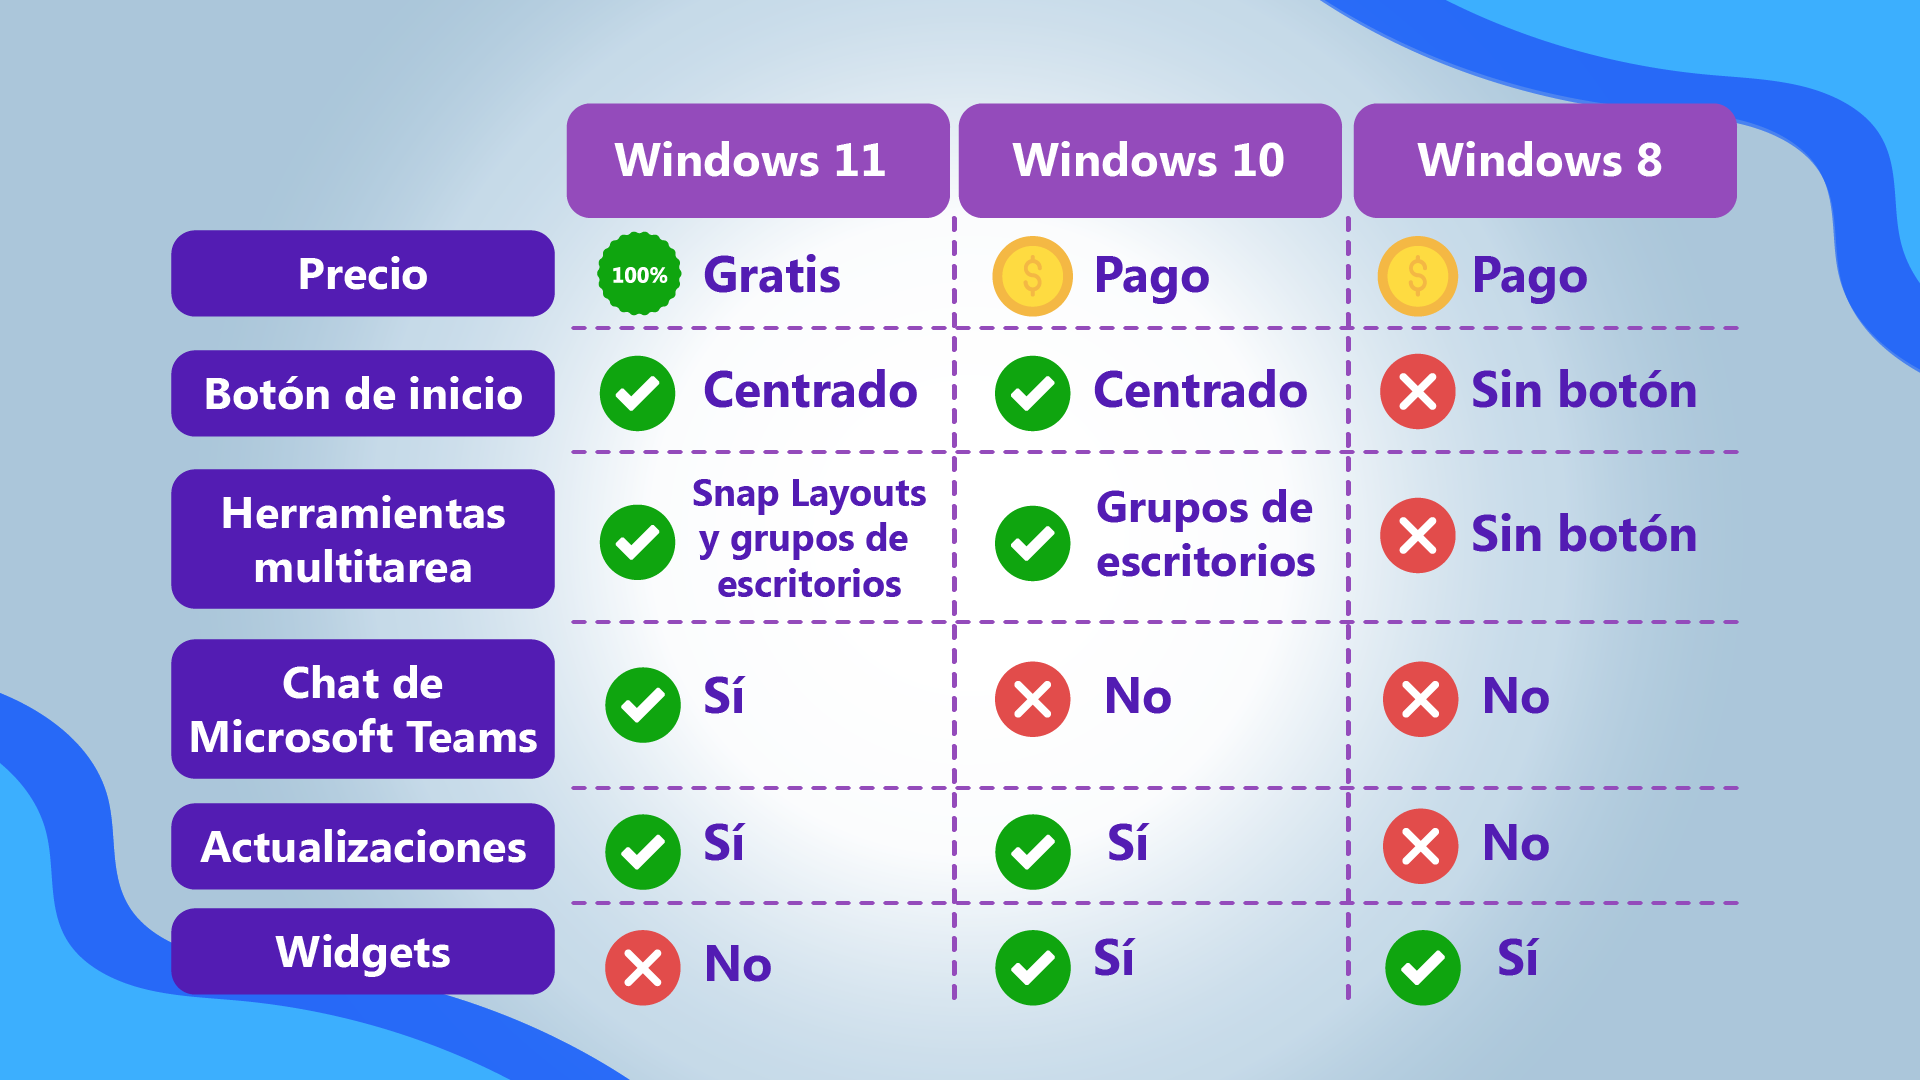 Comparación de Windows frente a versiones anteriores